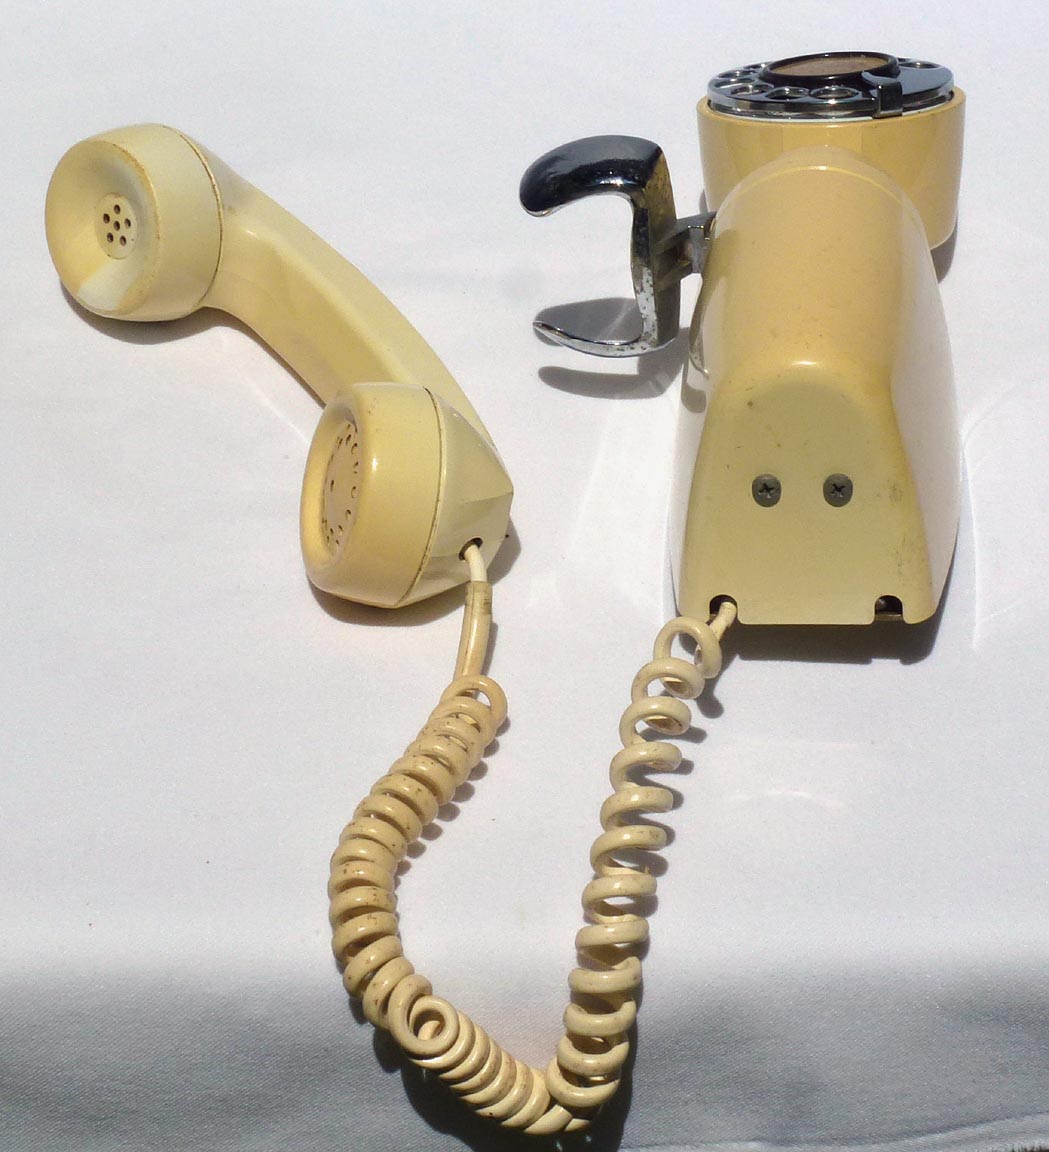 Three decorative telephones